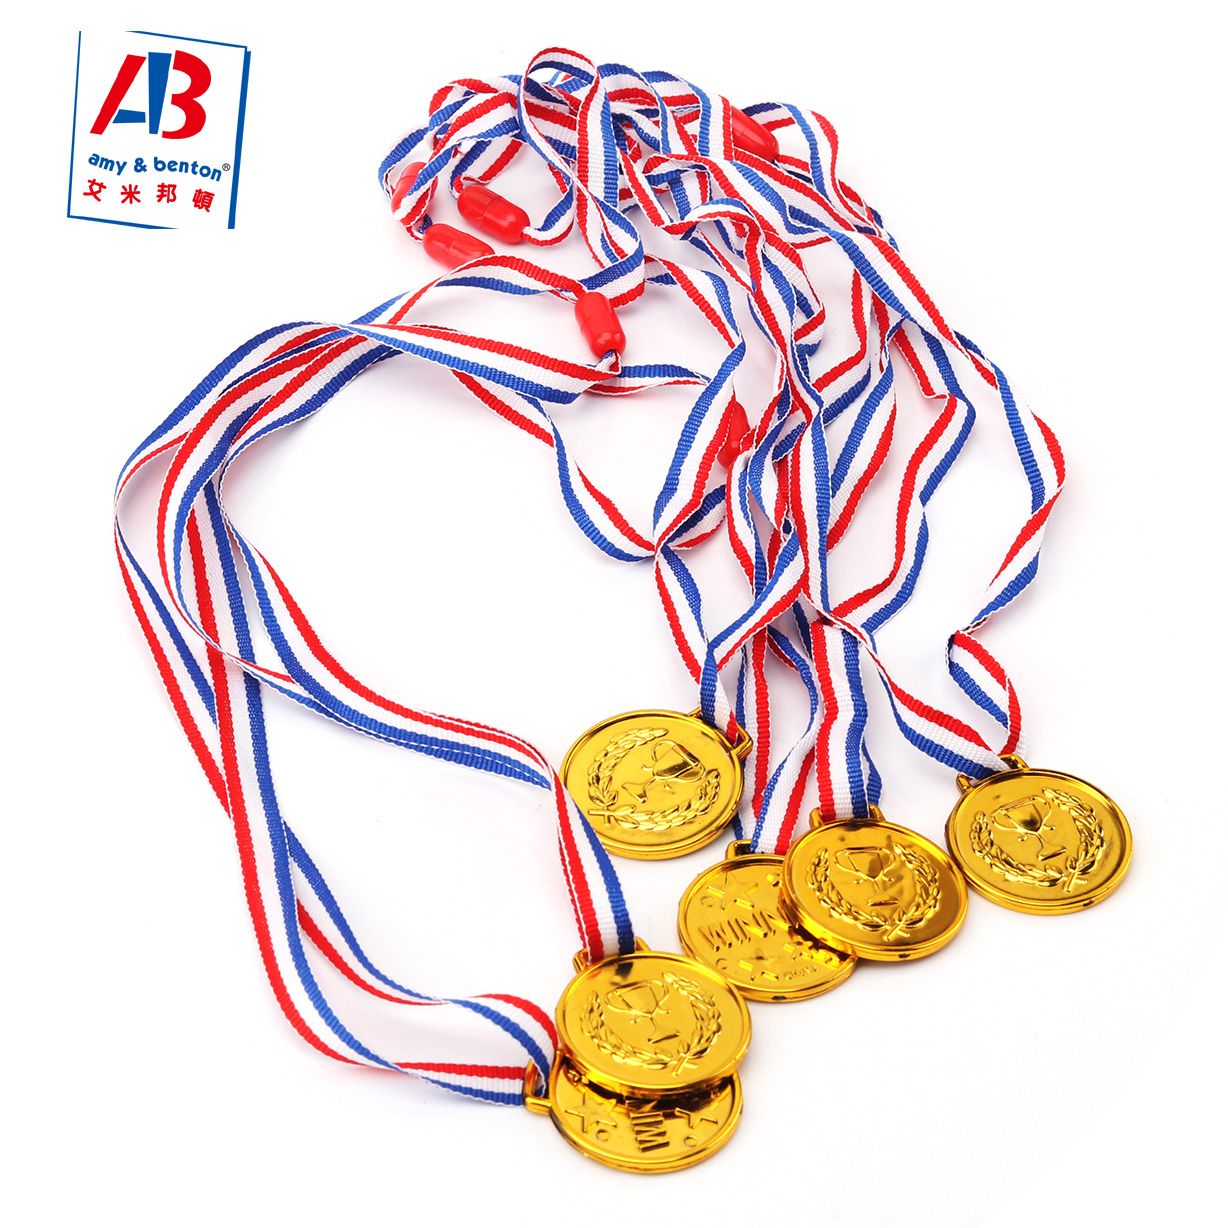 6 Potongan Medali Emas pikeun Kids Medali pikeun Awards Plastik Winner Award Medali pikeun Kids